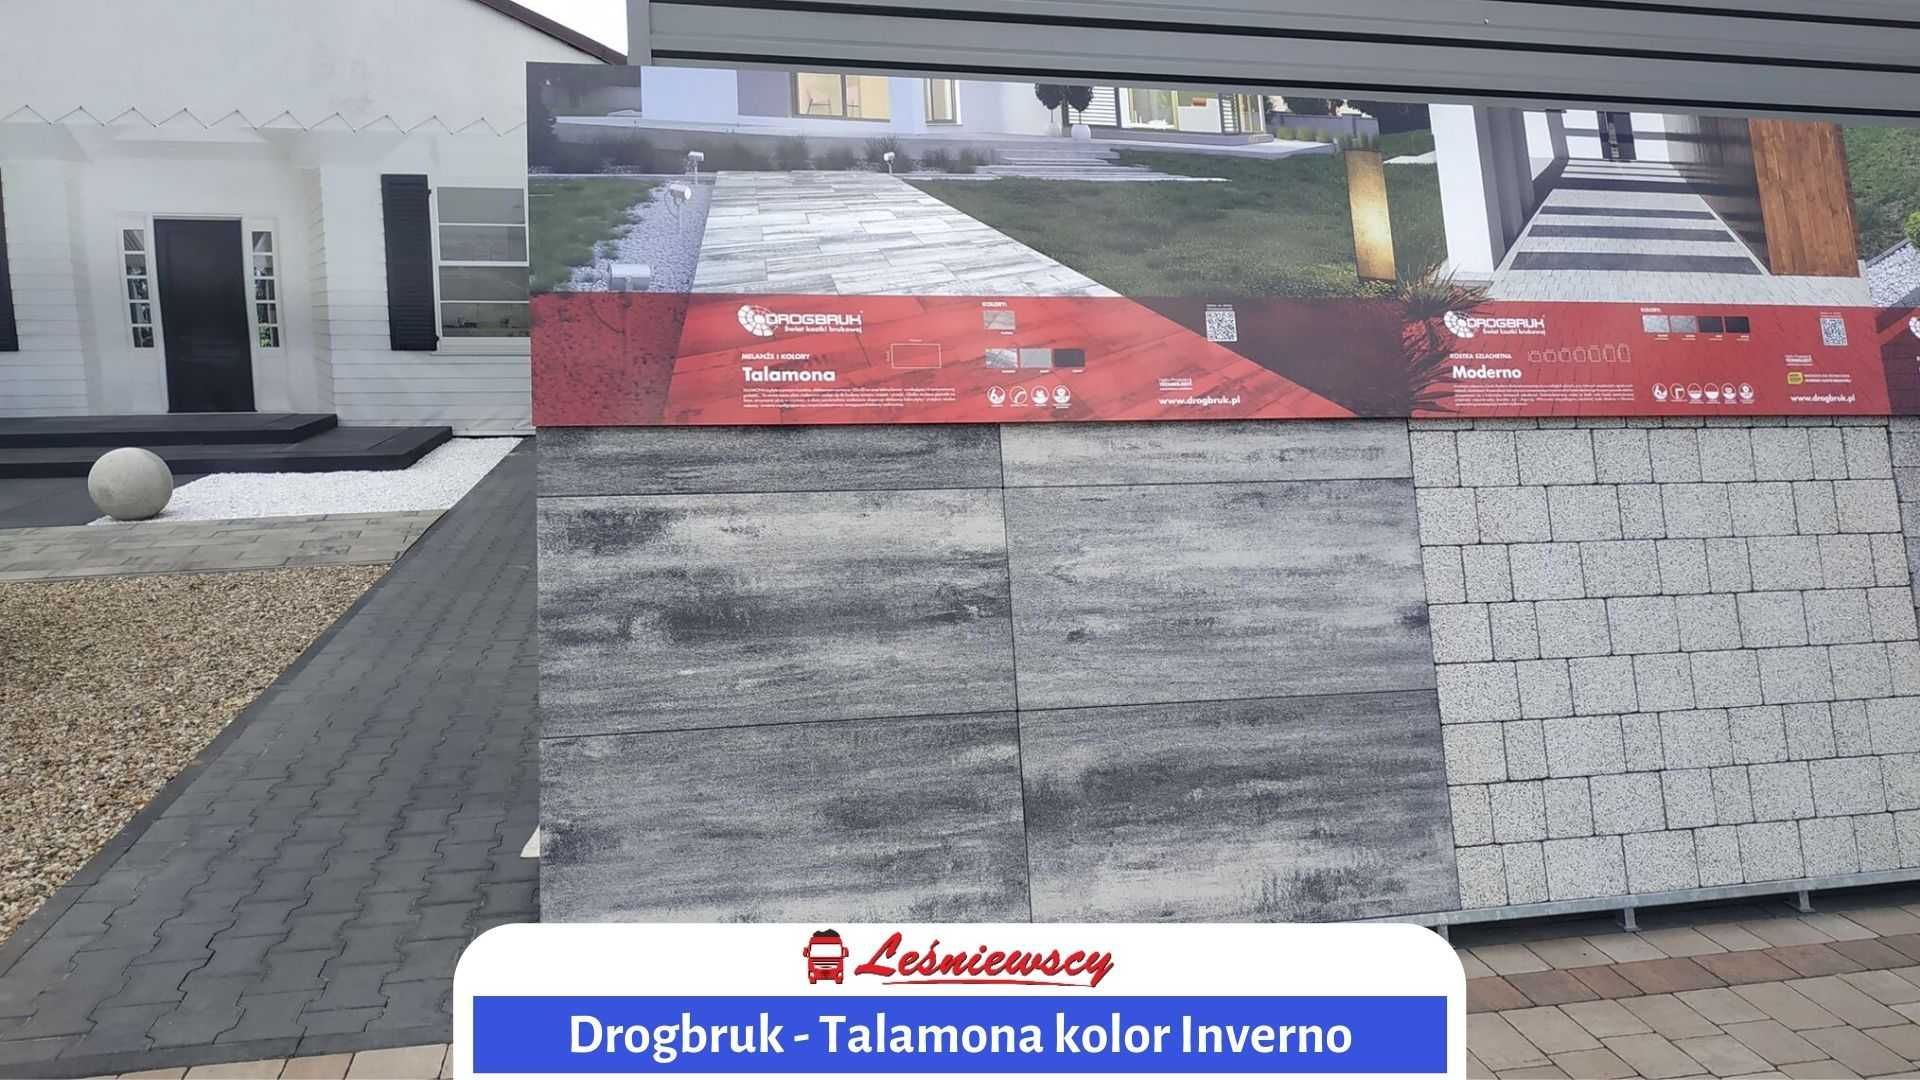 Płyta talamona betonowa duży format 100x50x6 DROGBRUK